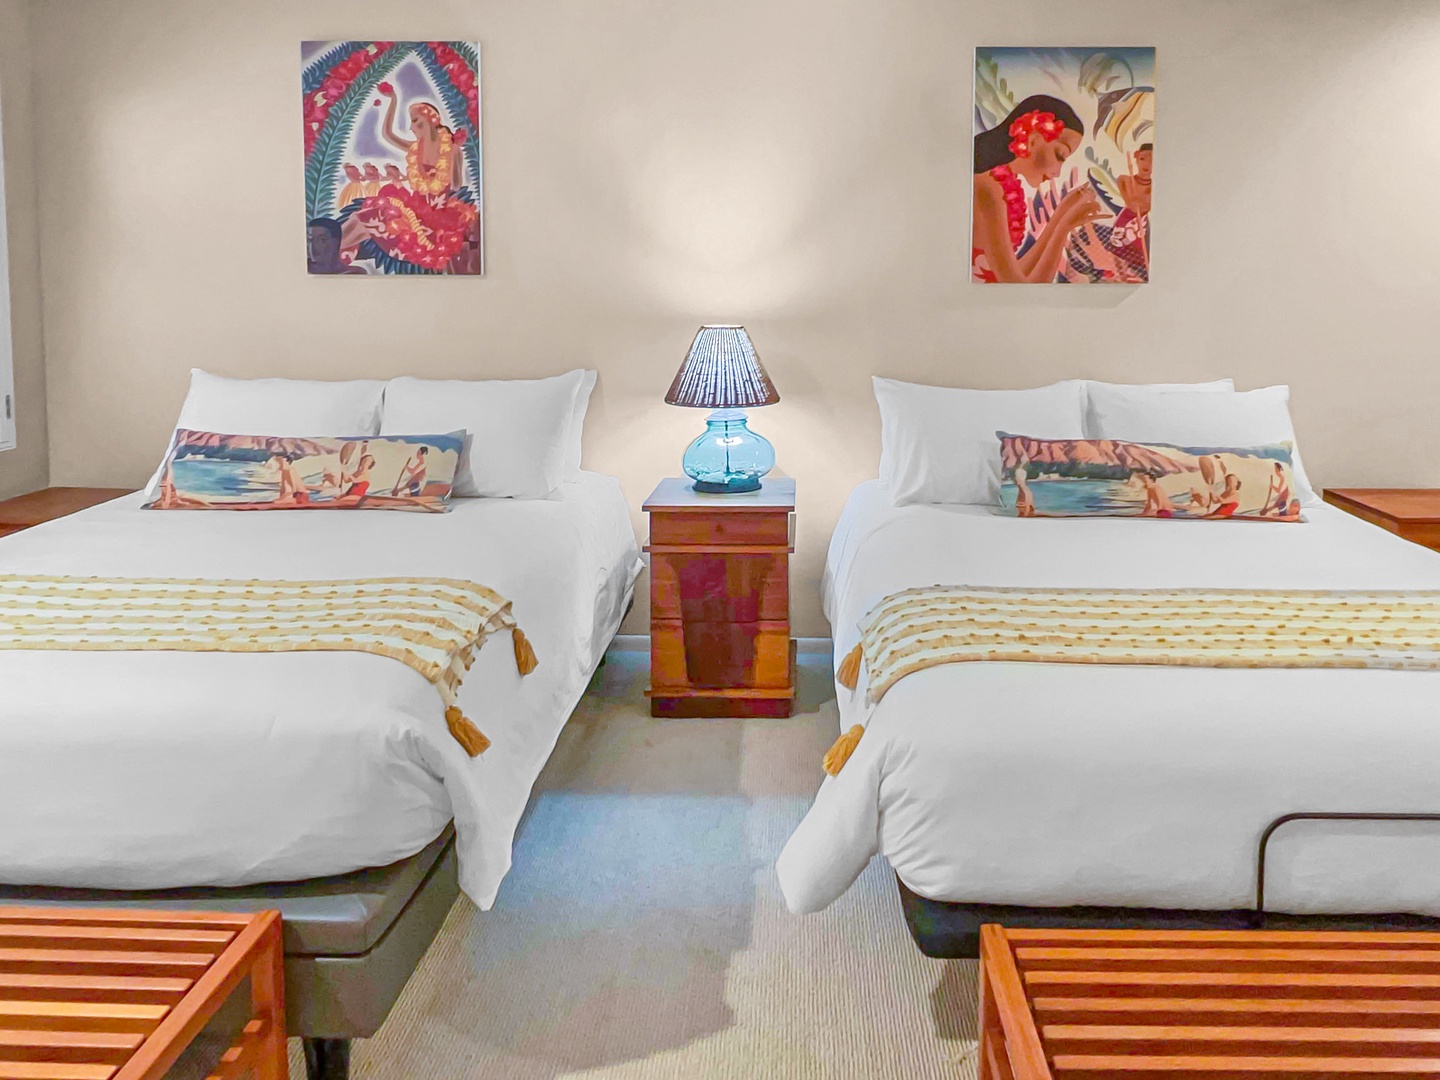 Honolulu Vacation Rentals, Hale Ola - Guest bedroom 3 offers 2 queen beds